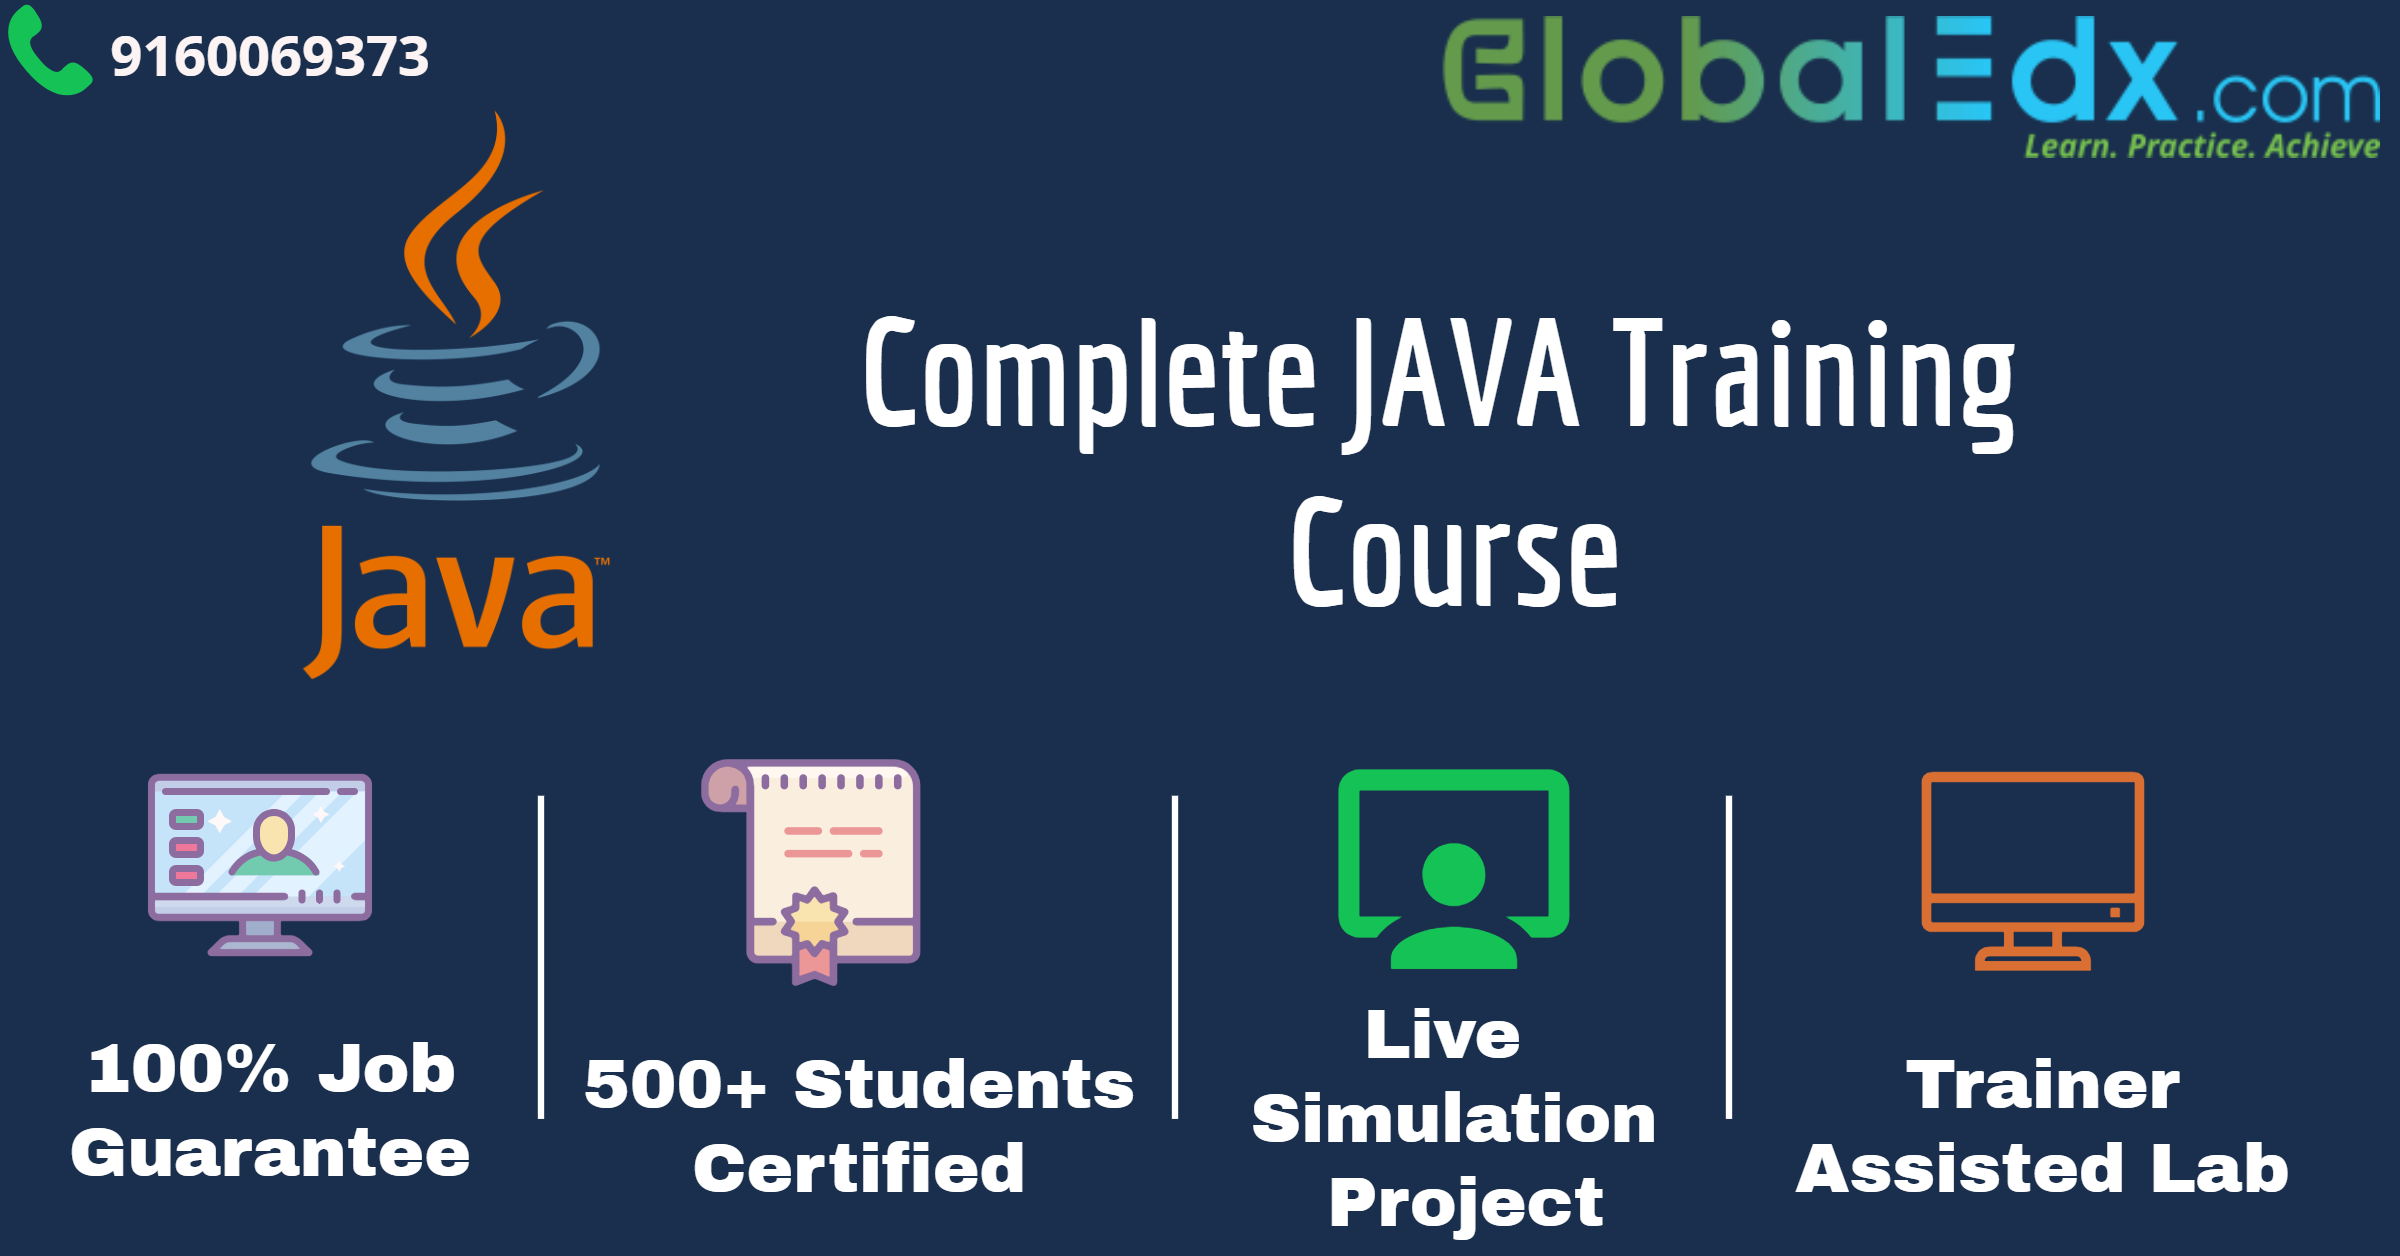 GlobalEdx is providing Advance Java Training Course